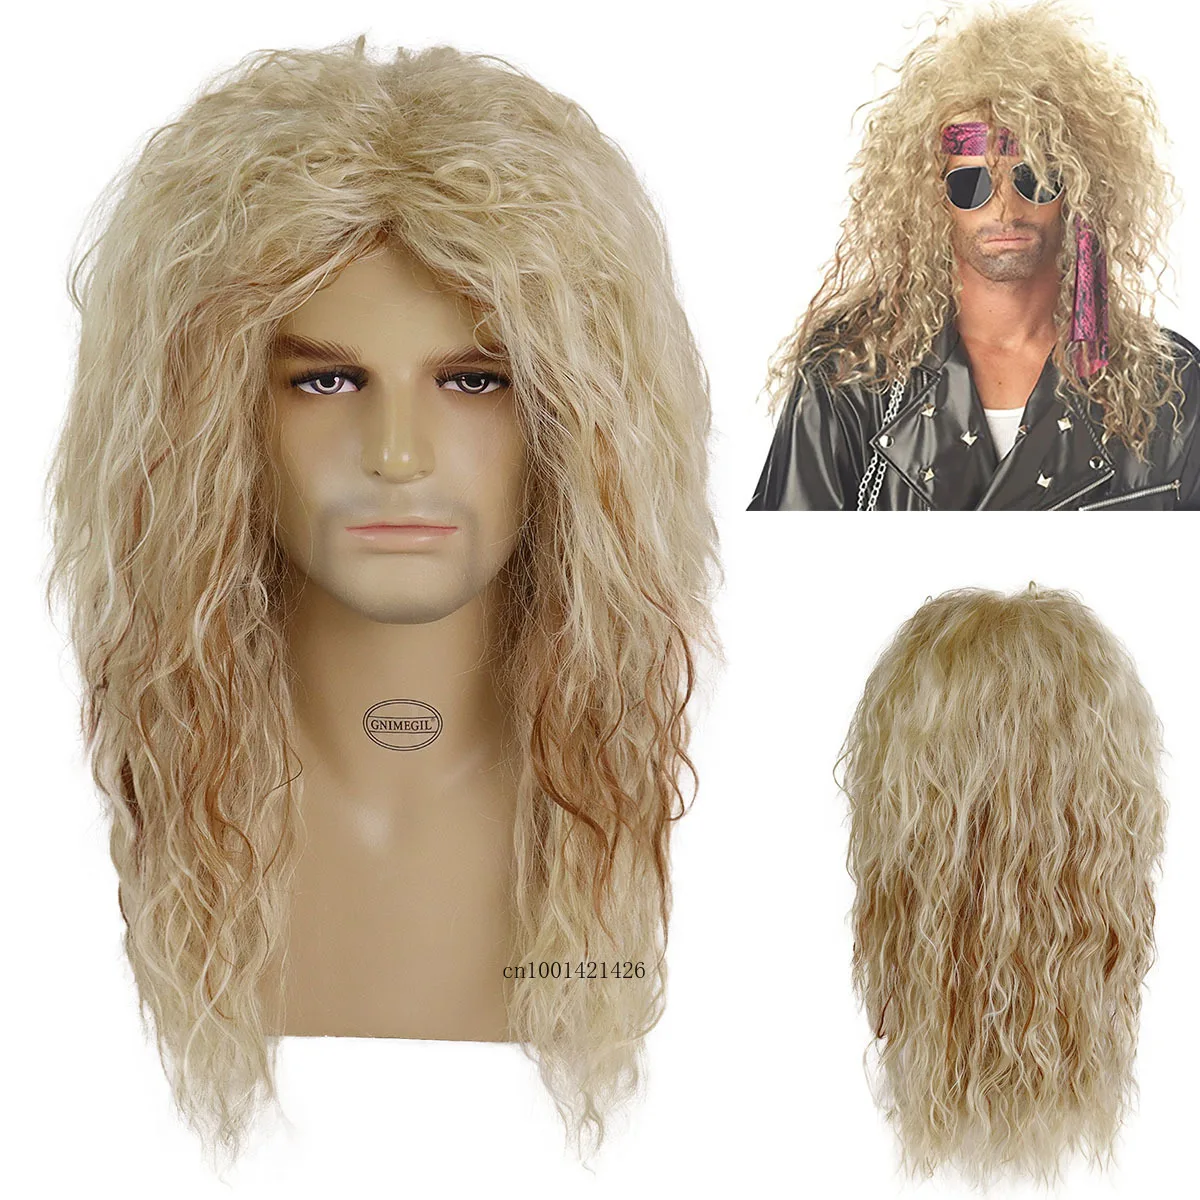 

Длинный волнистый парик GNIMEGIL 70s 80s синтетические волосы блонд парики вьющиеся для дискотеки вечеринки Хэллоуина парик для костюма с челкой смешанные светлые цвета